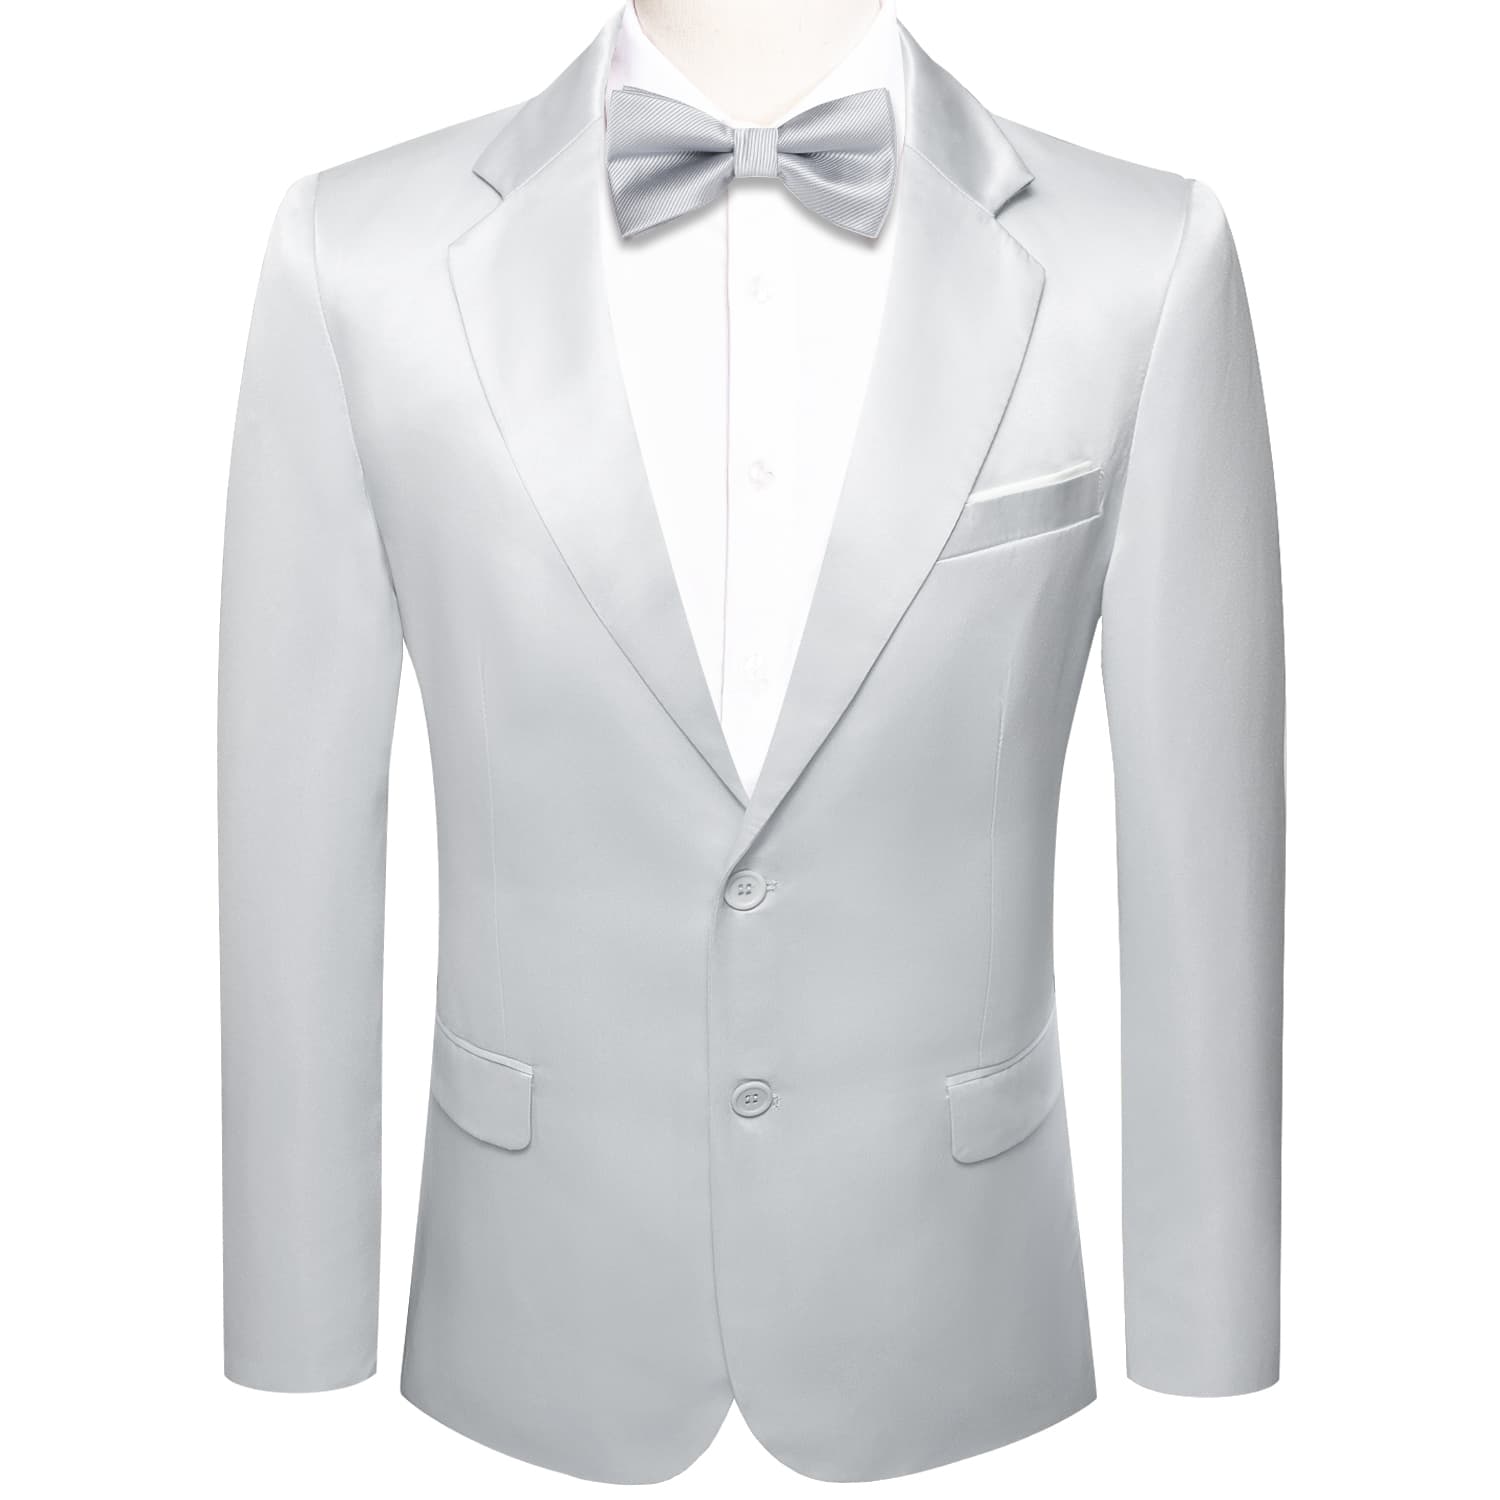 Blazer Slive Grey Men's Wedding Business Solid Top Men Suit